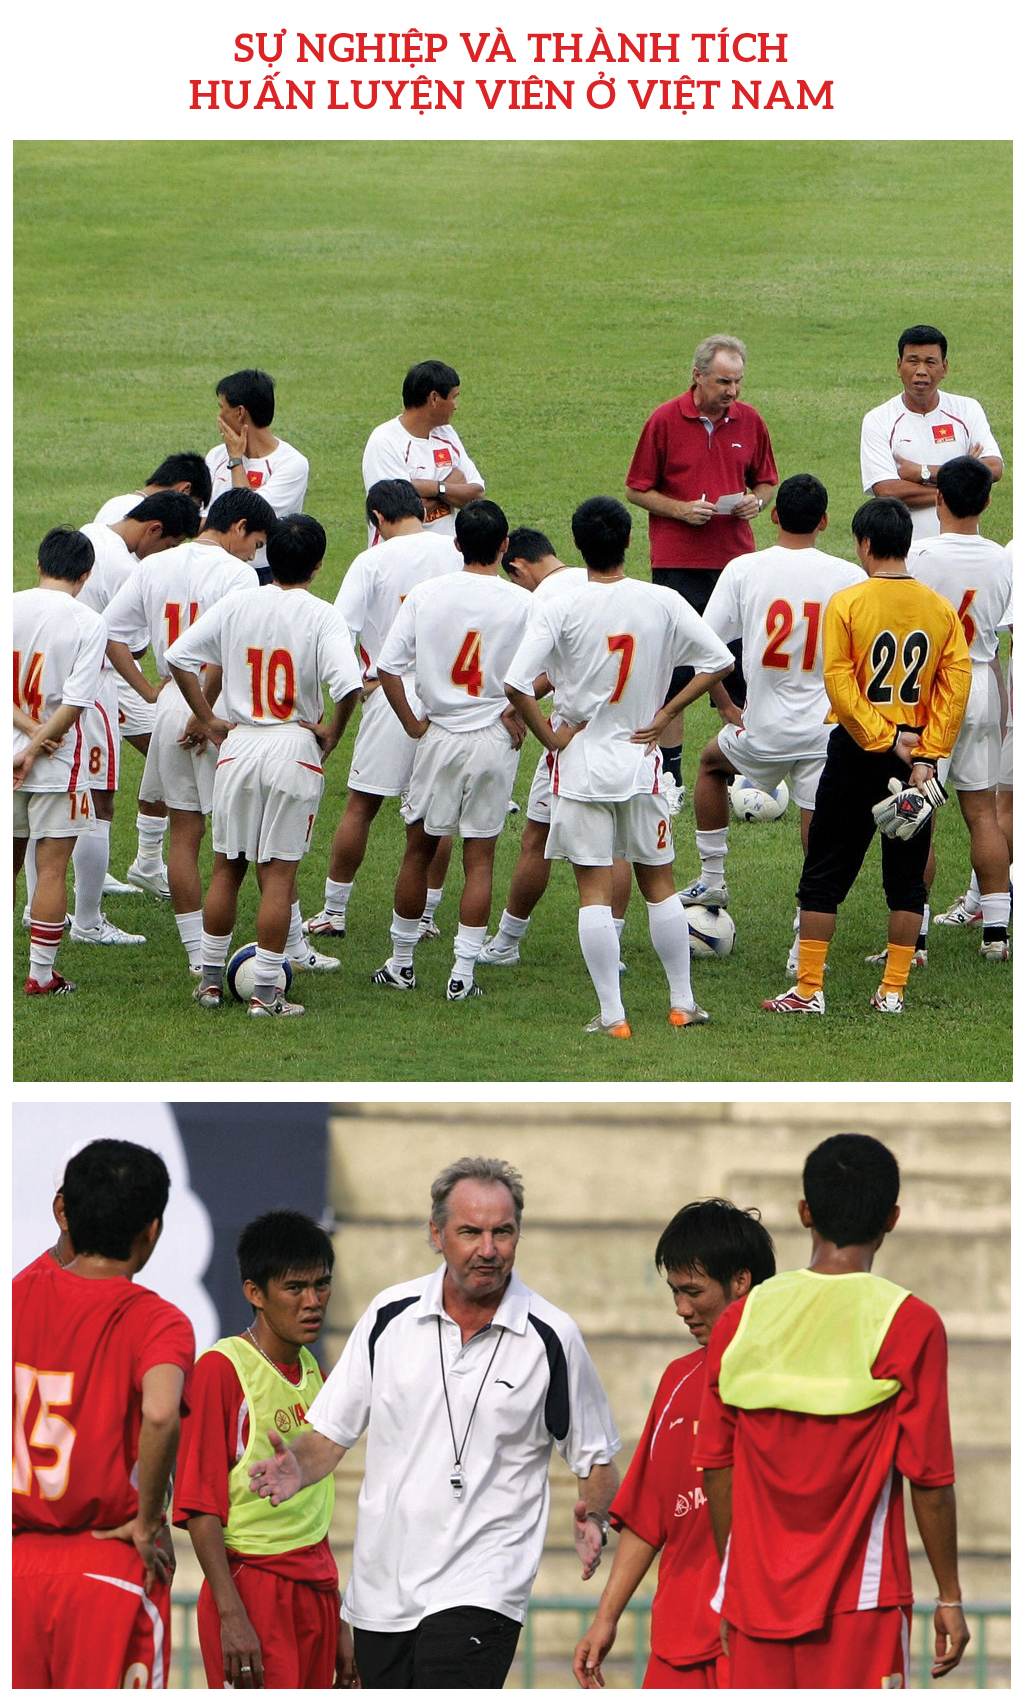 Hành trình 9 năm của ông Alfred Riedl với bóng đá Việt Nam ảnh 3